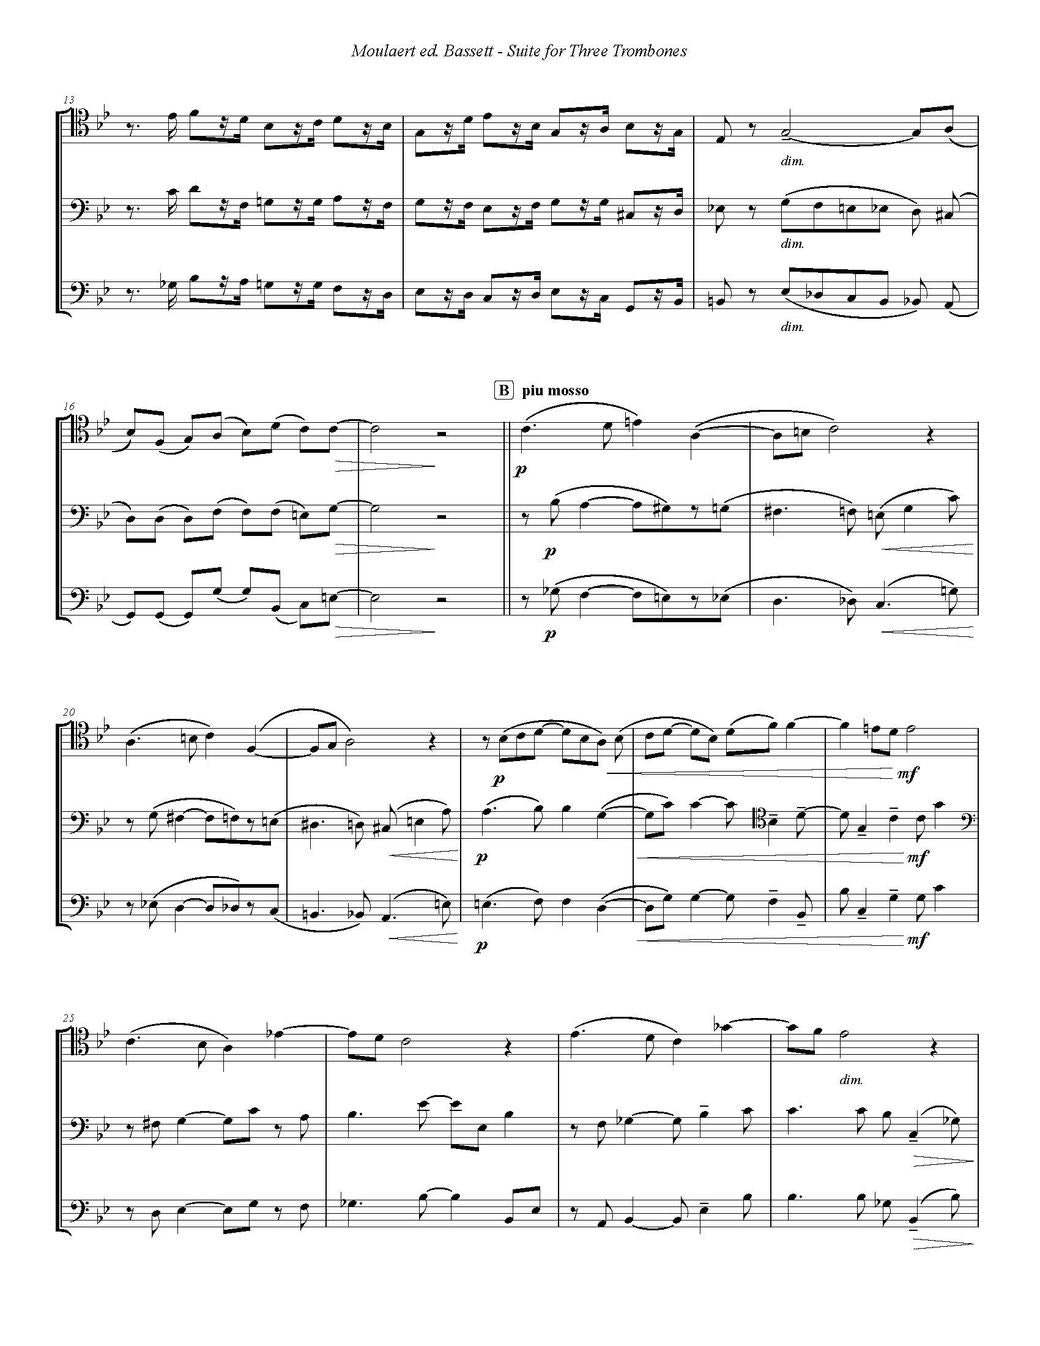 Raymond Moulaert ed. Bassett: Suite for Three Trombones ($25)